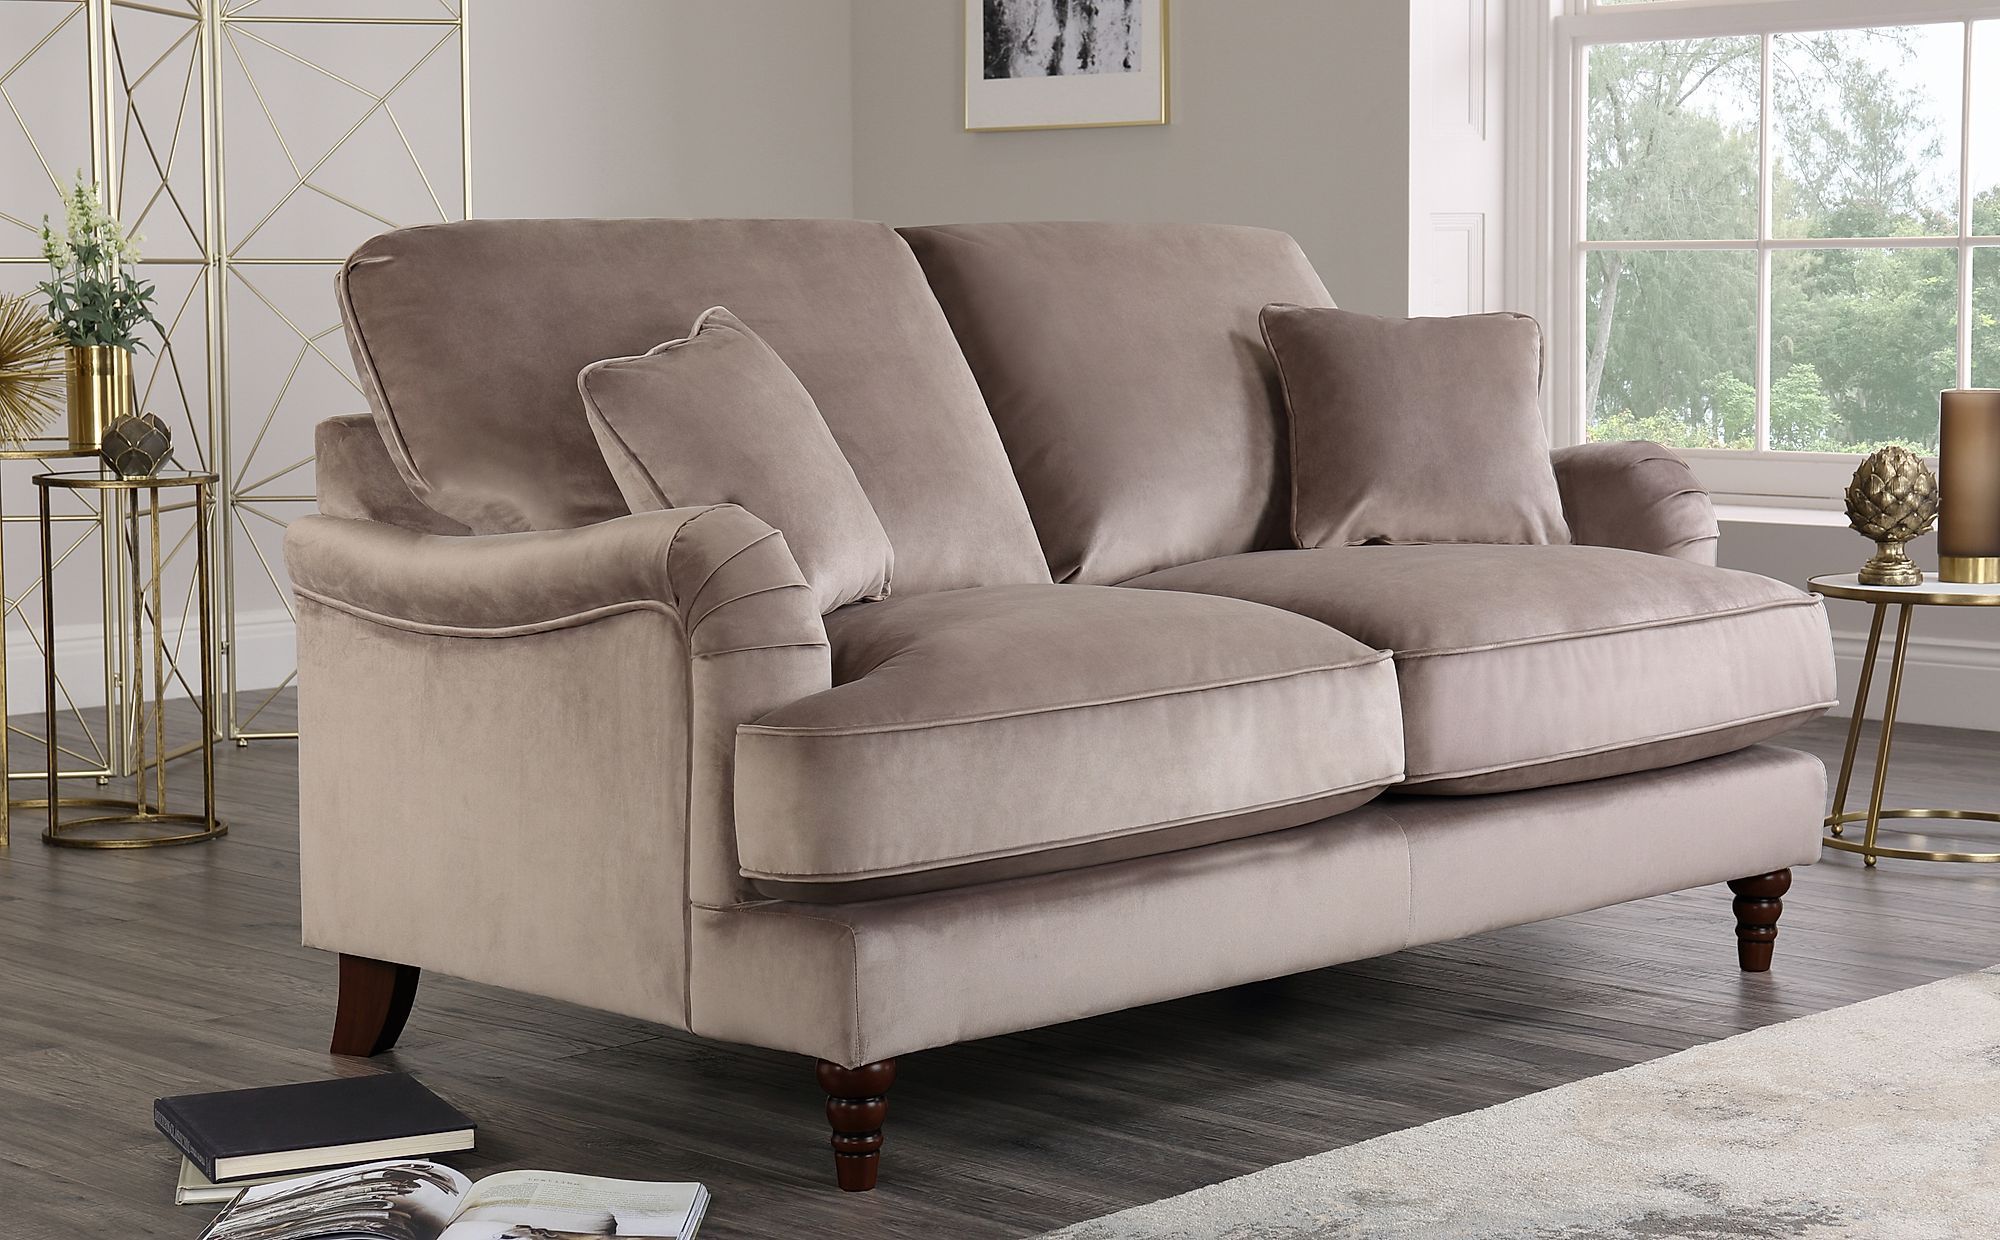 Charleston Mink Velvet 2 Seater Sofa | Furniture Choice With Black Velvet 2 Seater Sofa Beds (Gallery 10 of 20)